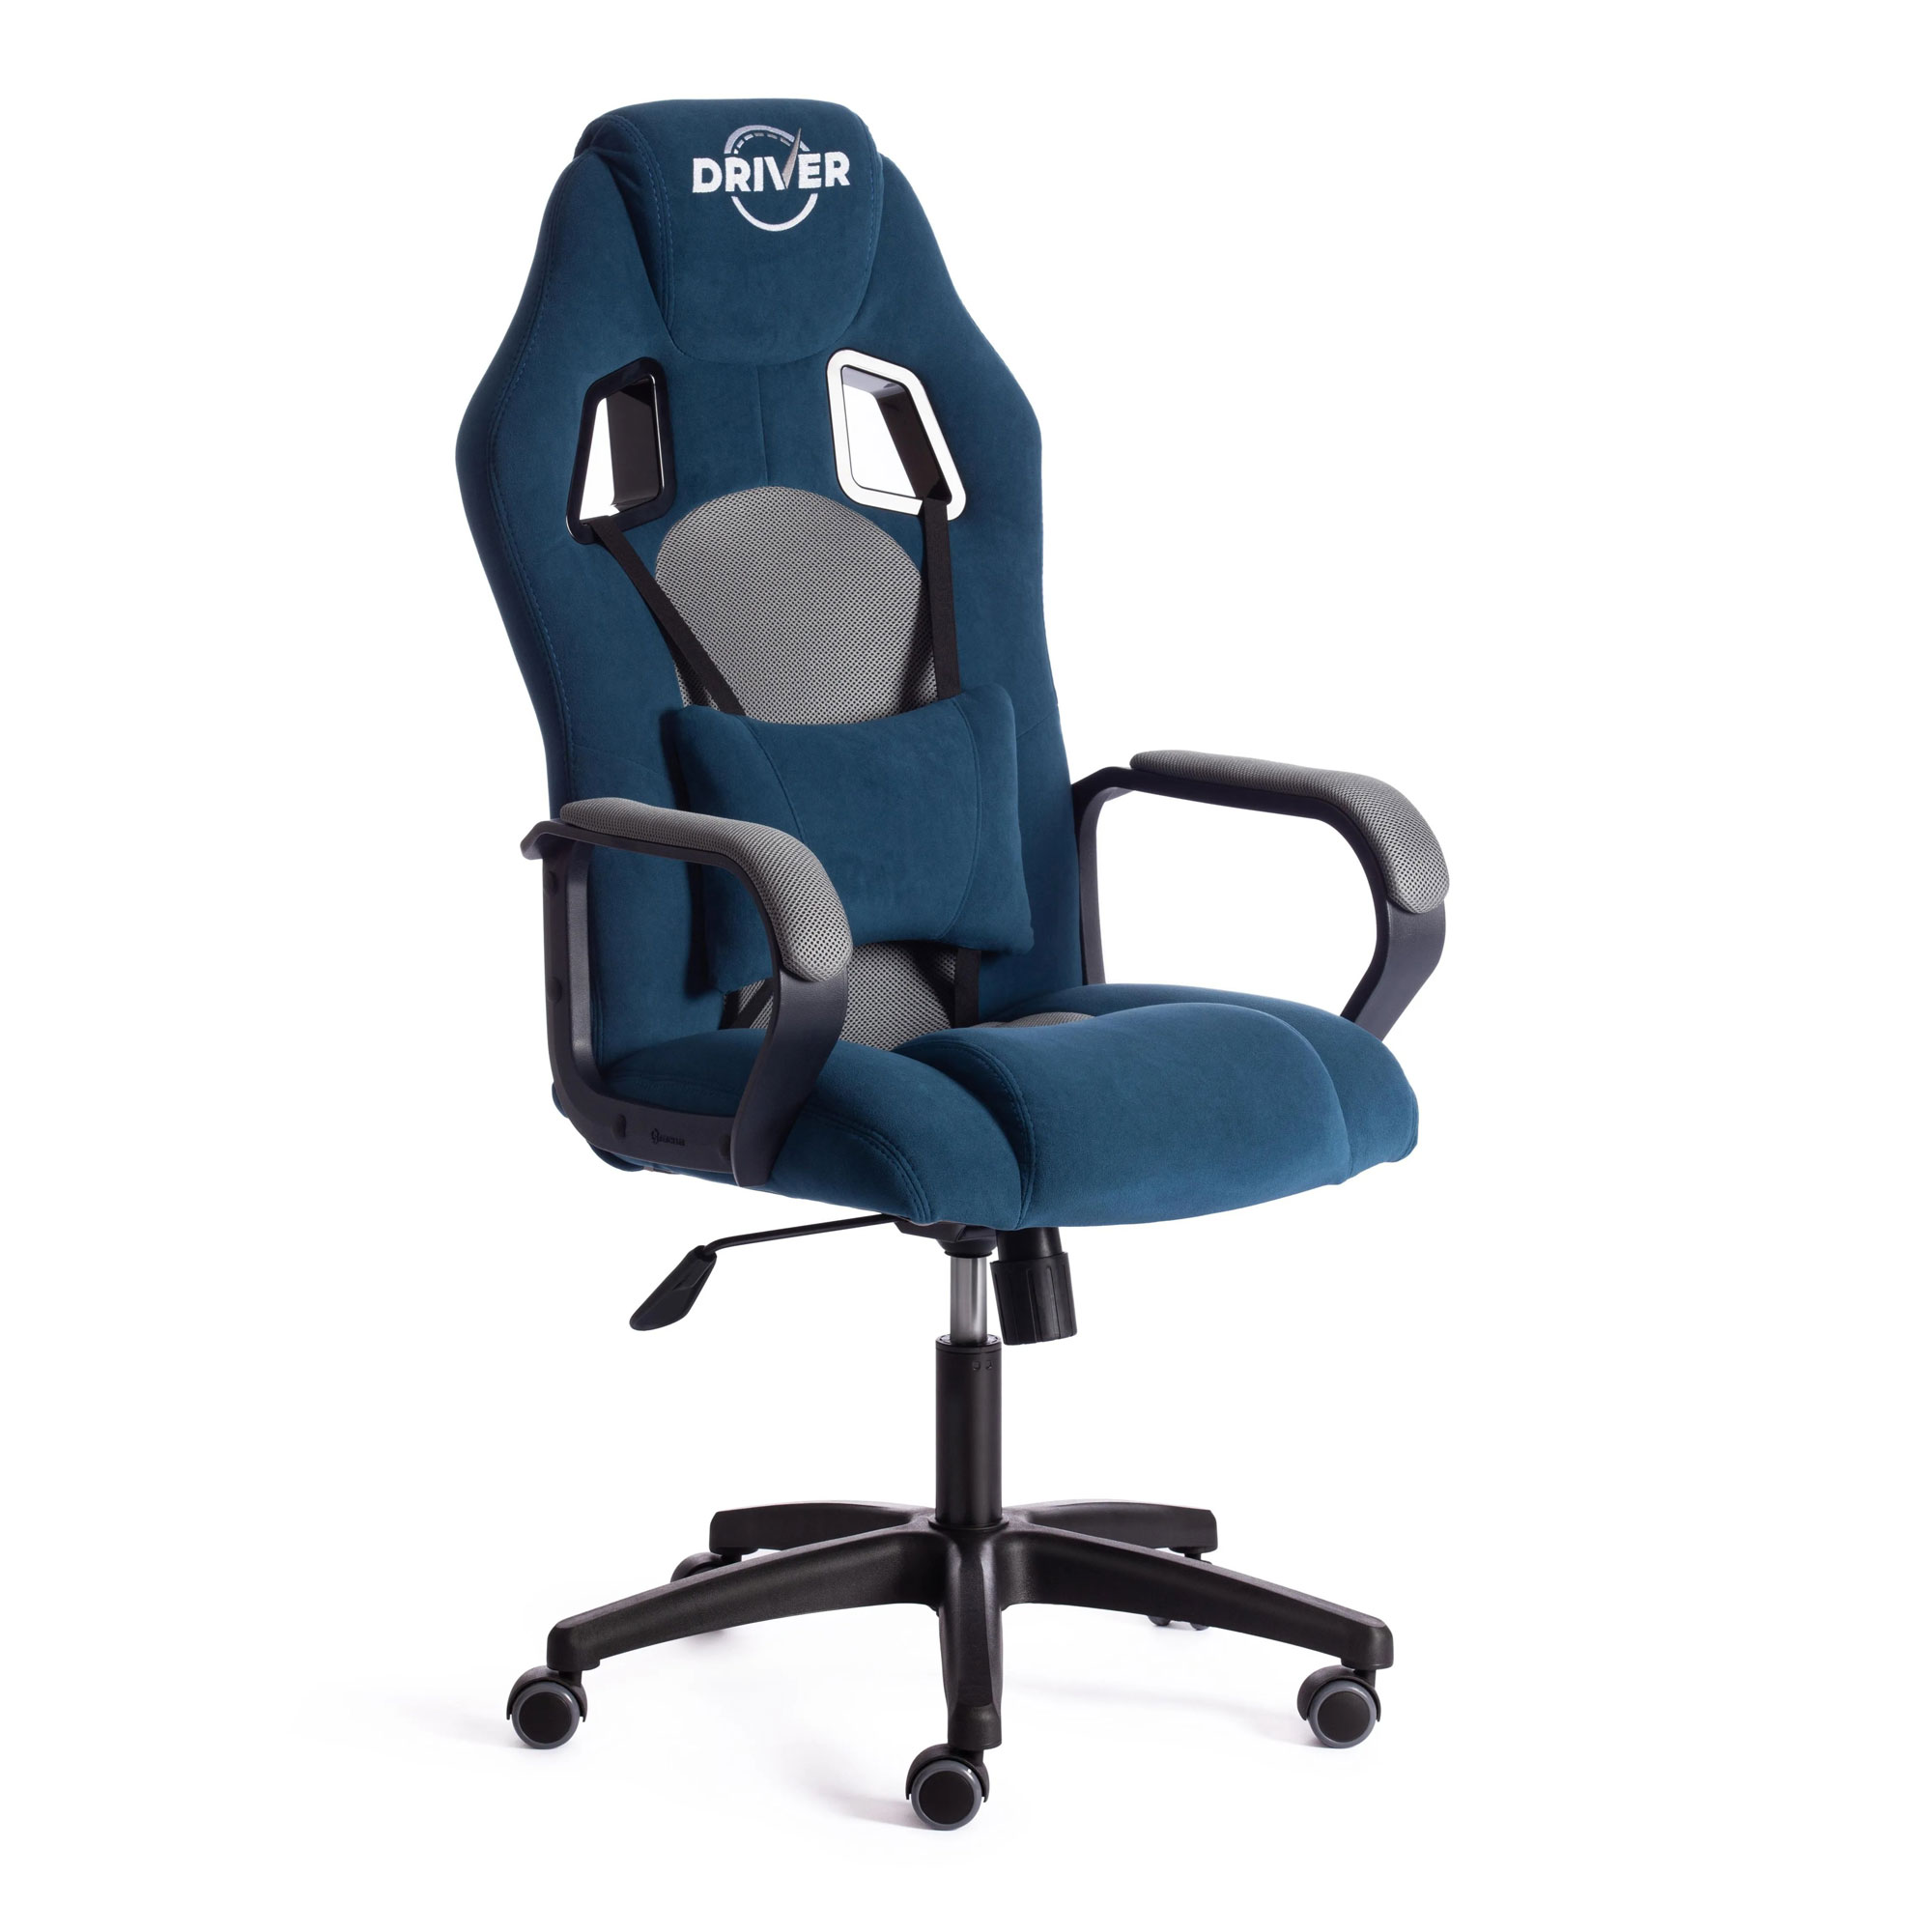 Где купить Кресло компьютерное TC Driver флок синее с серым 55х49х126 см TC 